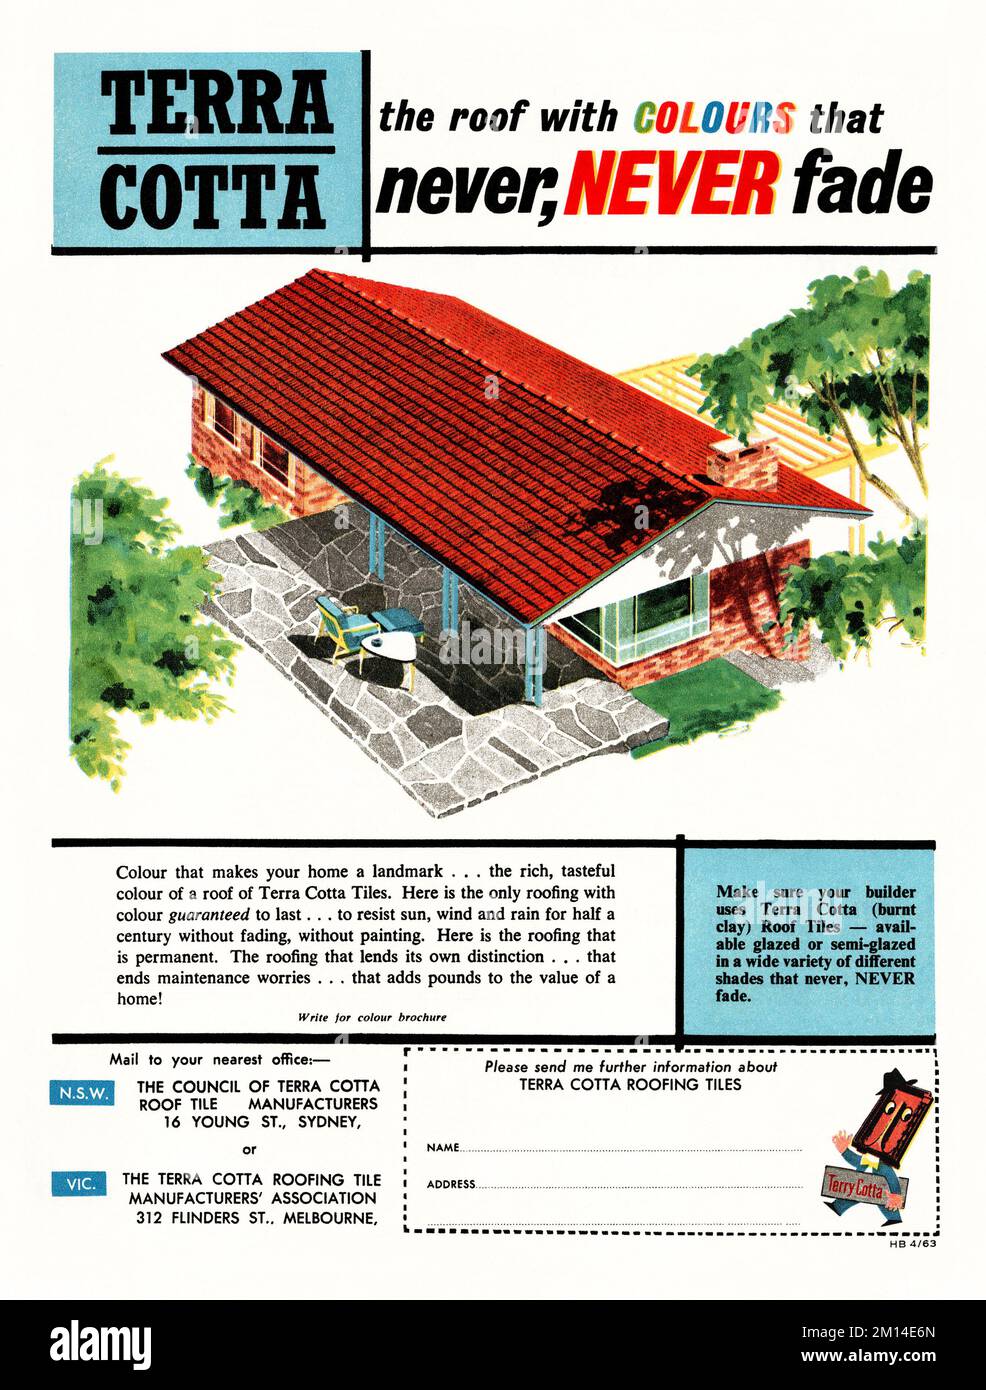 Ein 1960er-Werbespot für Terra Cotta Dachziegel – erschien 1963 in einer australischen Zeitschrift. Die Abbildung zeigt ein modernes Haus mit einem hellroten Dach. Im Werbespot wird angegeben, dass die Farbe der verbrannten Tonfliesen niemals verblasst. Der Werbespot zeigt eine Zeichentrickfigur mit dem Namen „Terry Cotta“ – klassische 19-60-Grafiken für redaktionelle Zwecke. Stockfoto